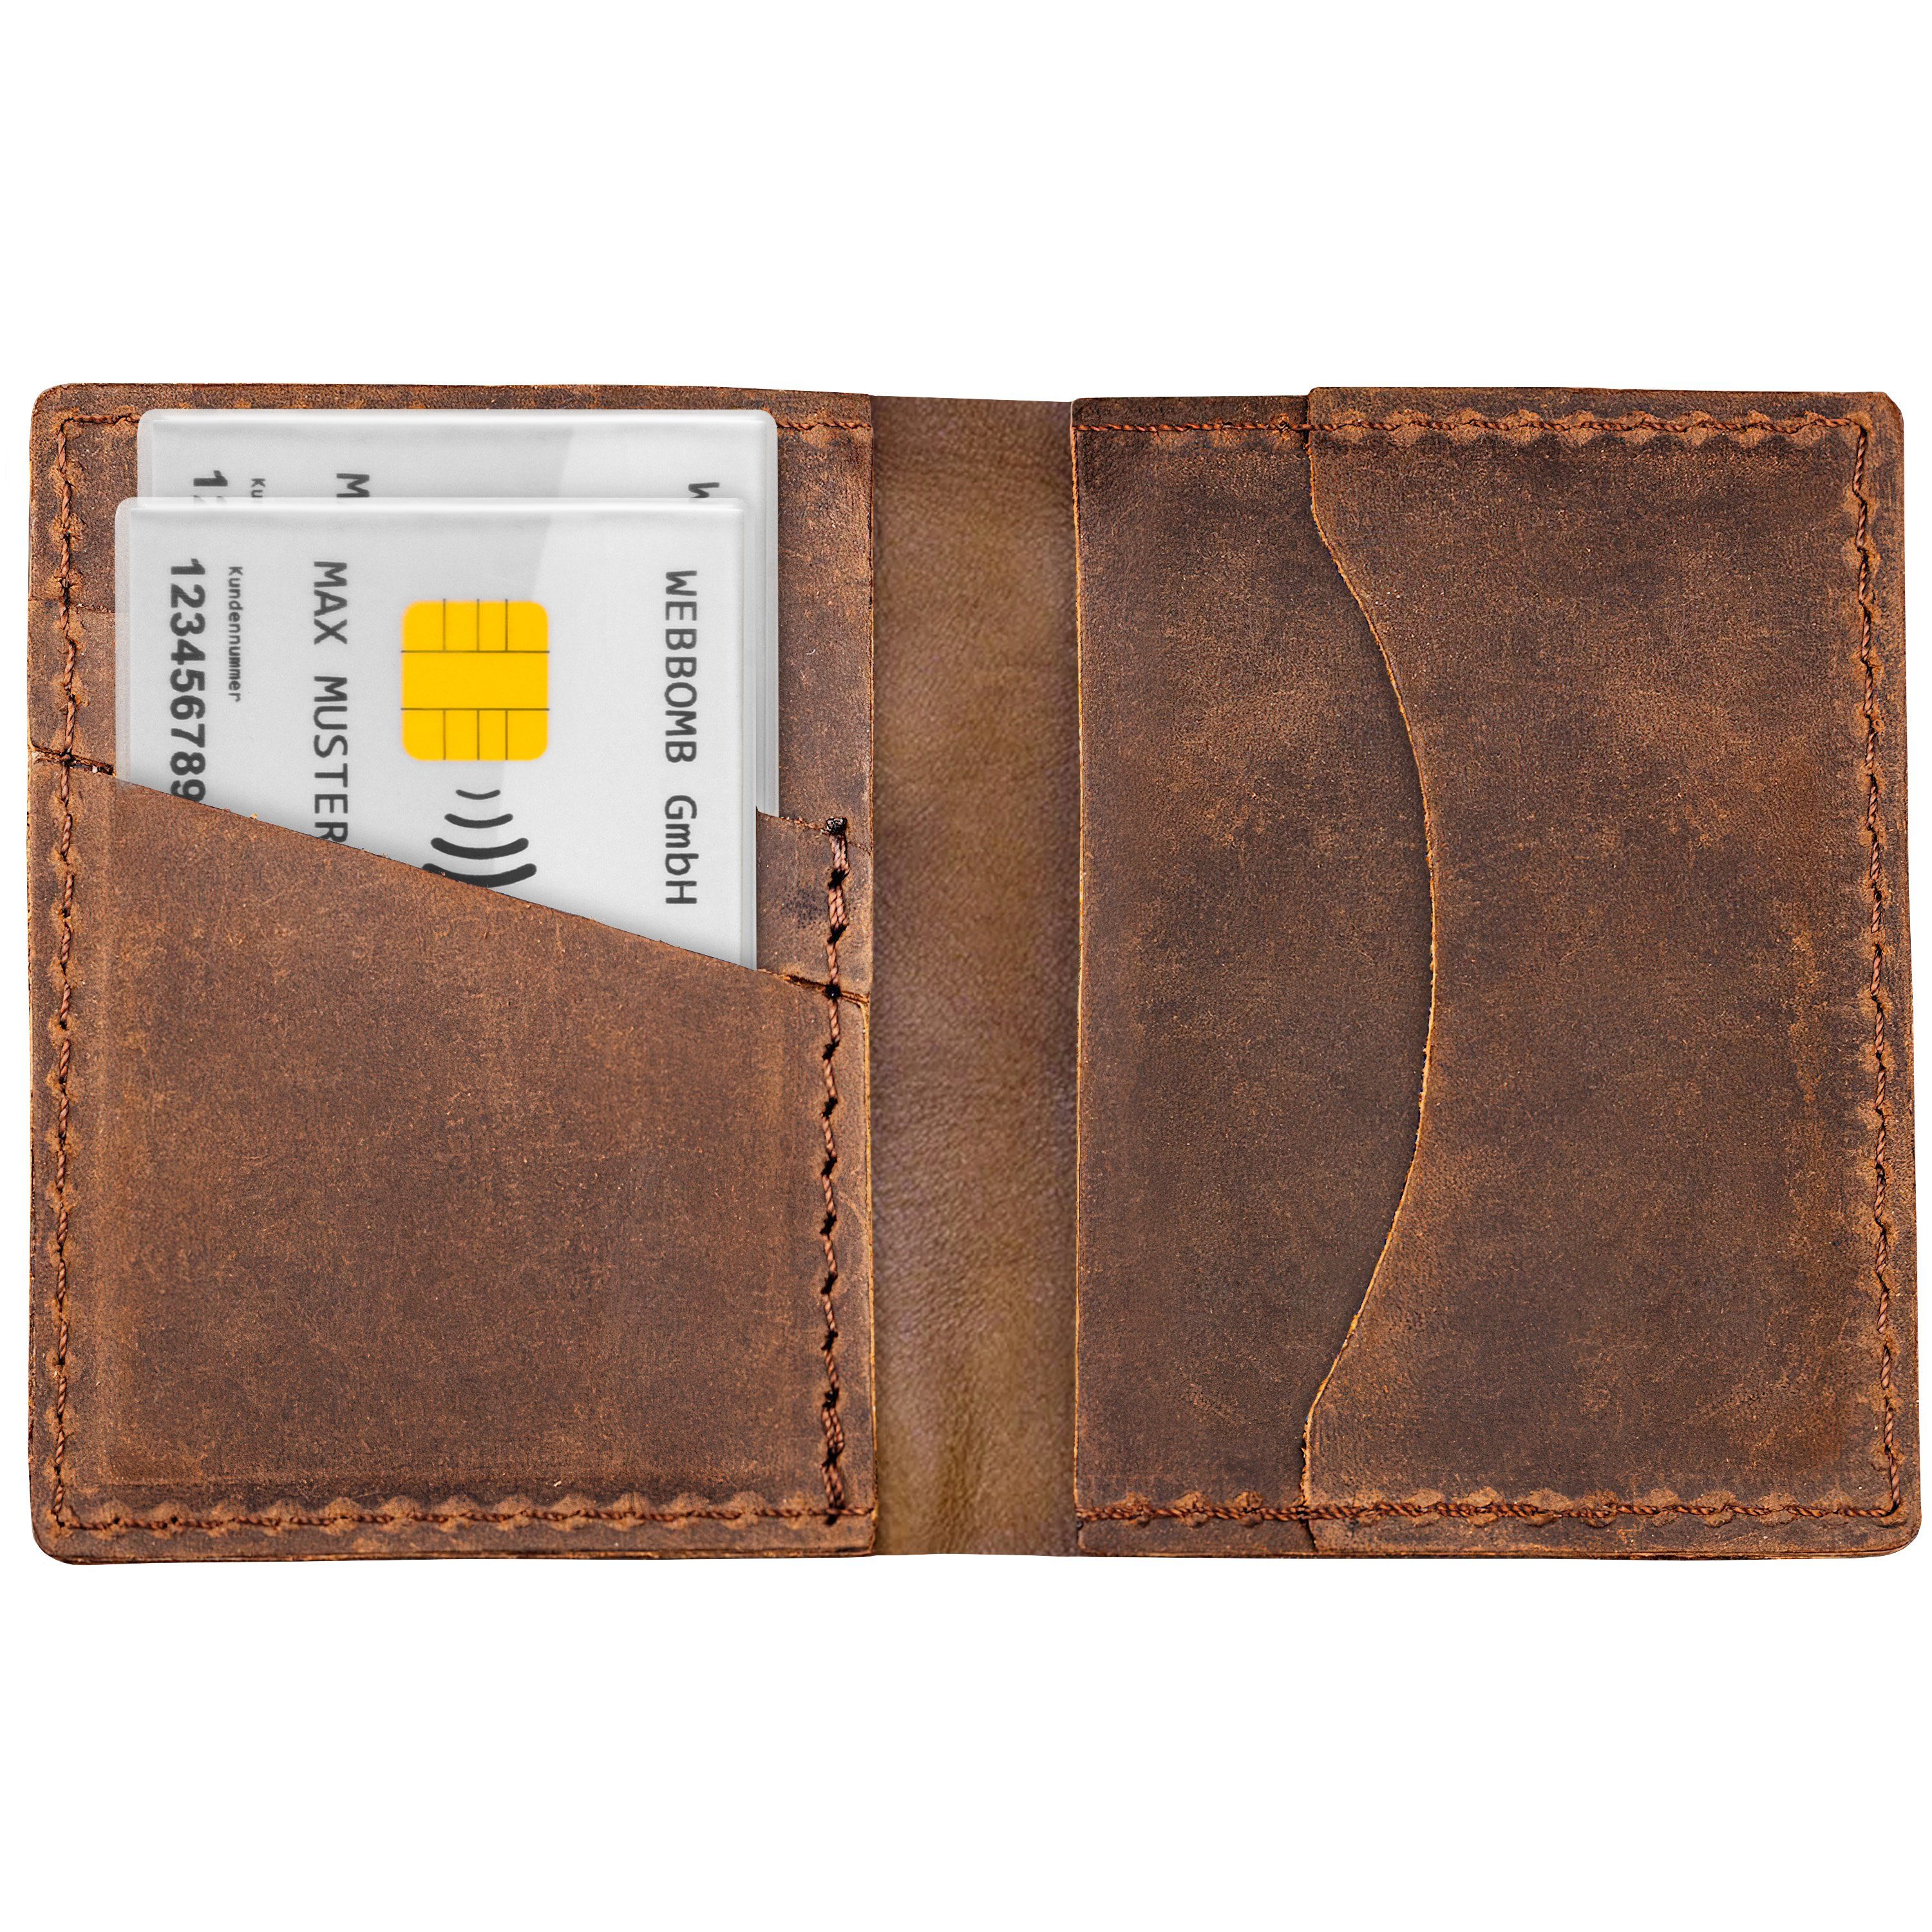 WEBBOMB Schlüsselanhänger Schutzhüllen Kreditkarten EC-Karten Kartenhüllen (4-tlg) Geldbörse Ausweise